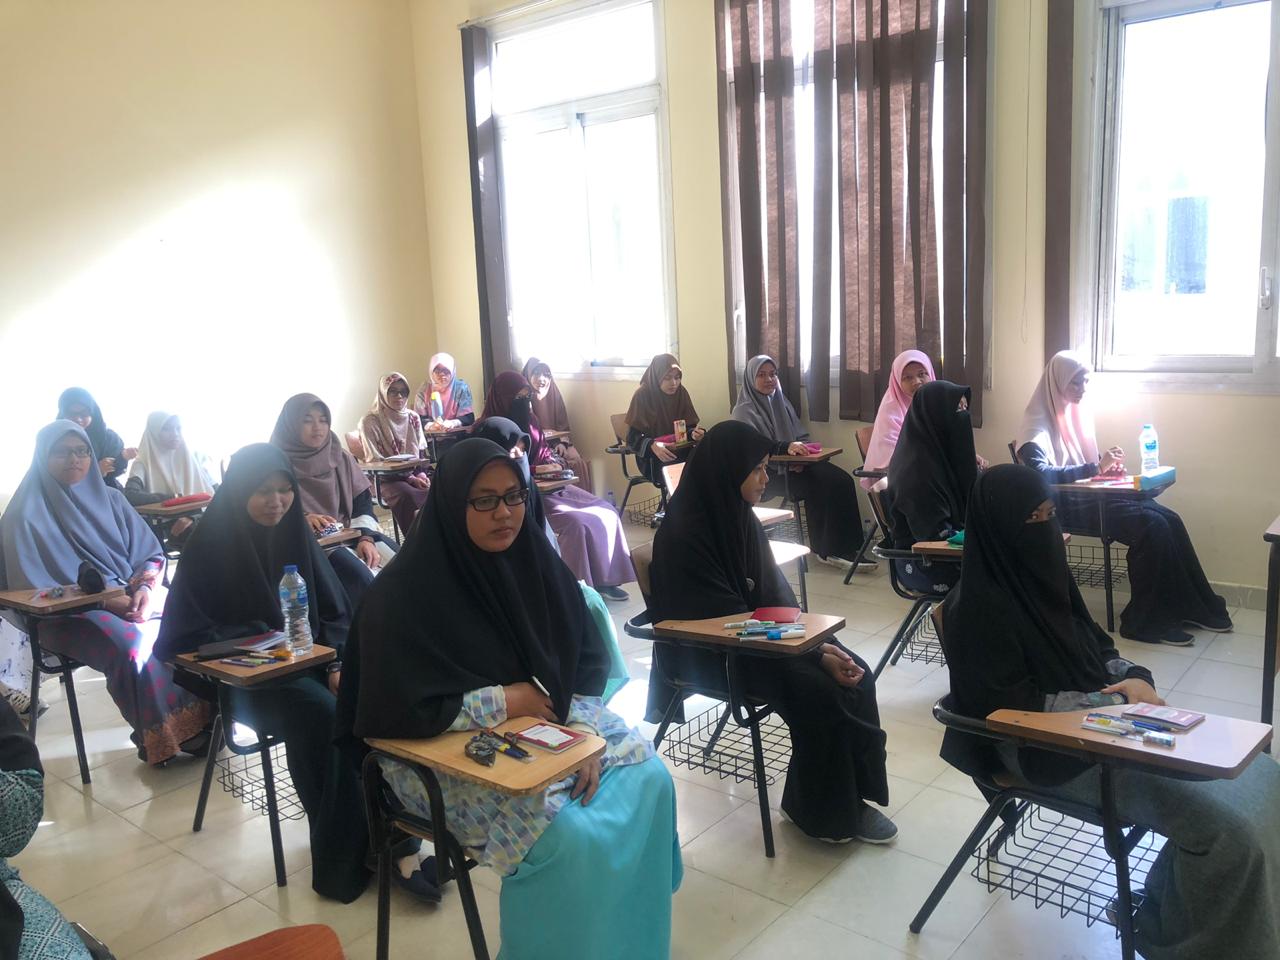 اختبار تحديد المستوى بمركز الشيخ زايد لتعليم اللغة العربية لغير الناطقين بها